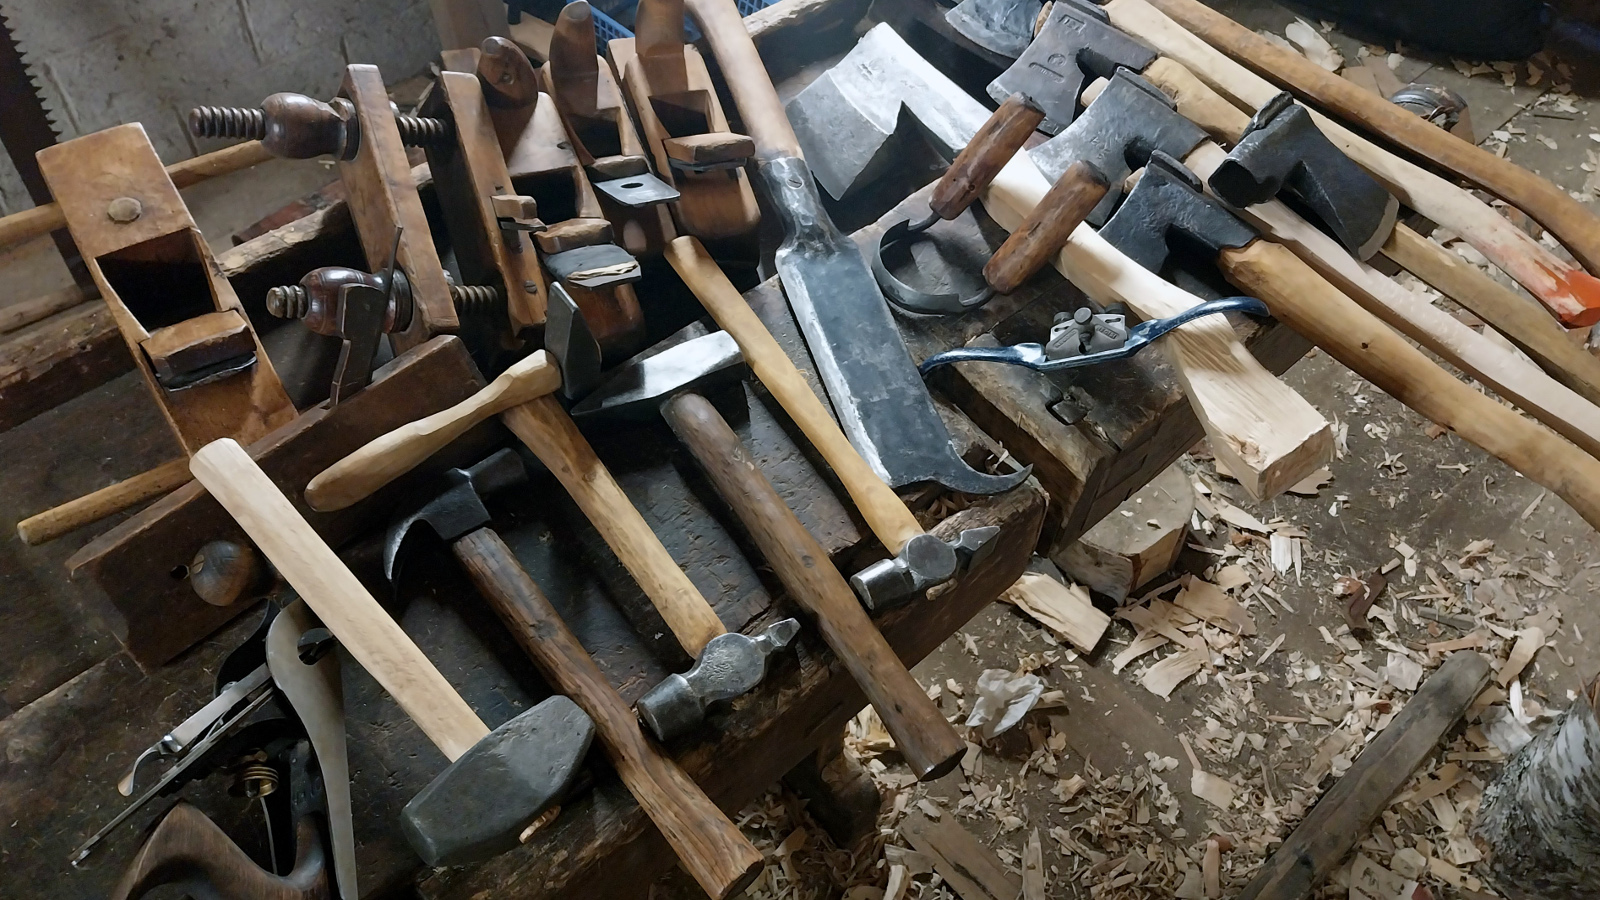 Kuvassa on runsaasti erilaisia työkaluja kuten kirveitä, vasaroita ja lekoja pöydän päällä.